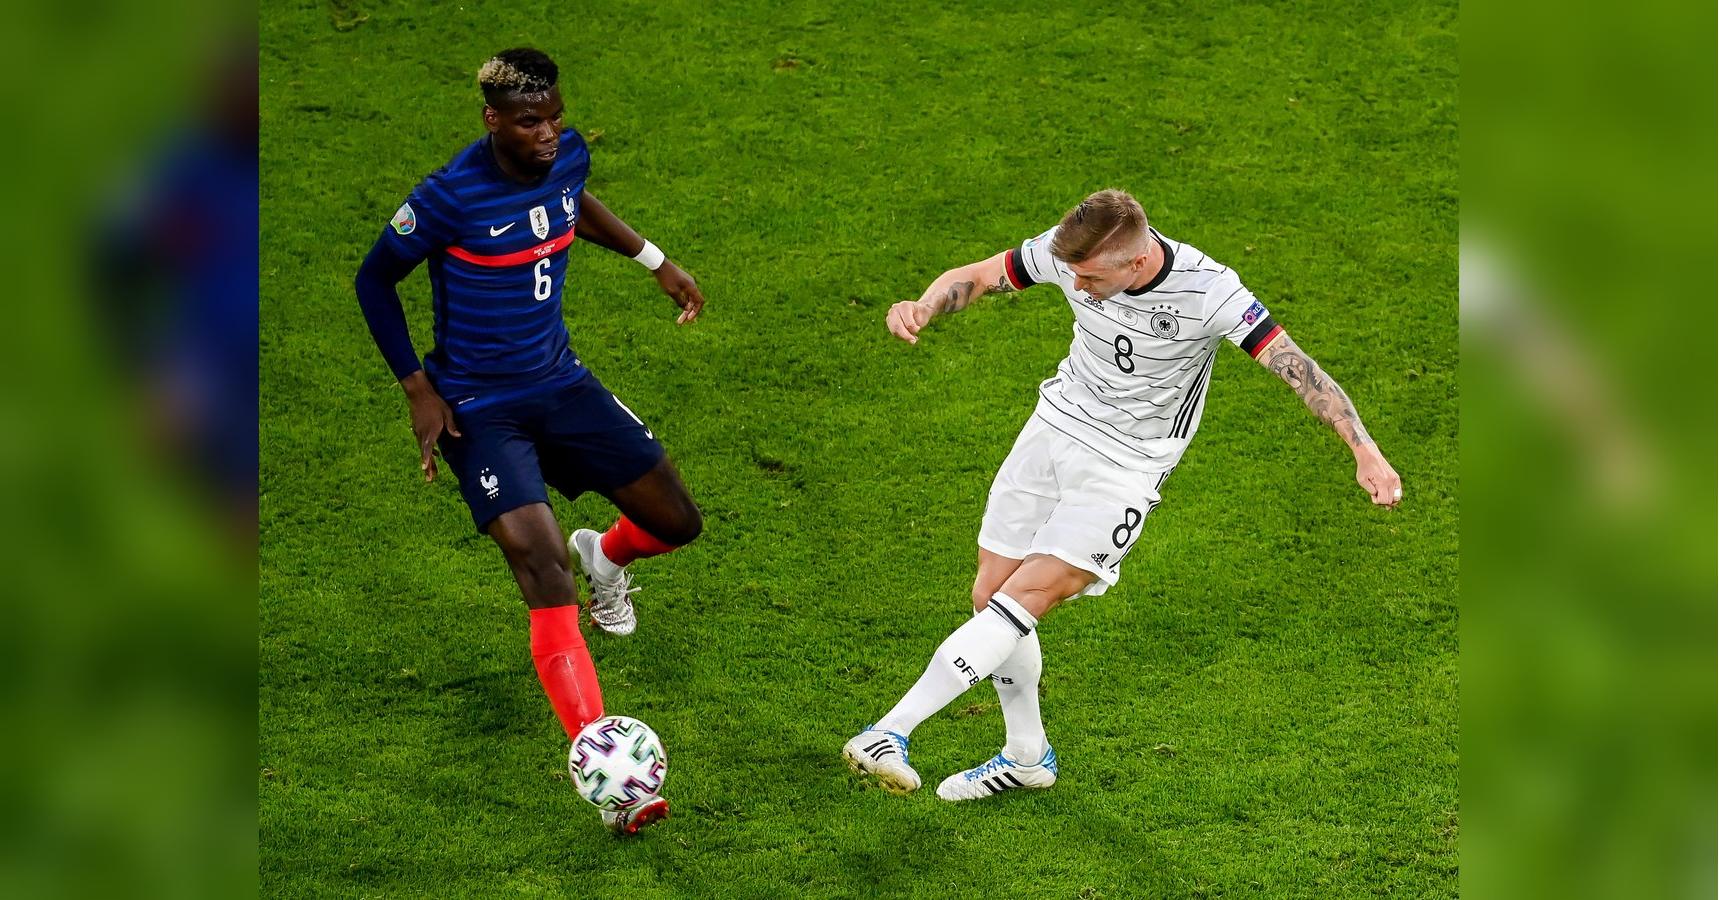 Франция Германия 1:0 - смотреть онлайн видео голов матча ...